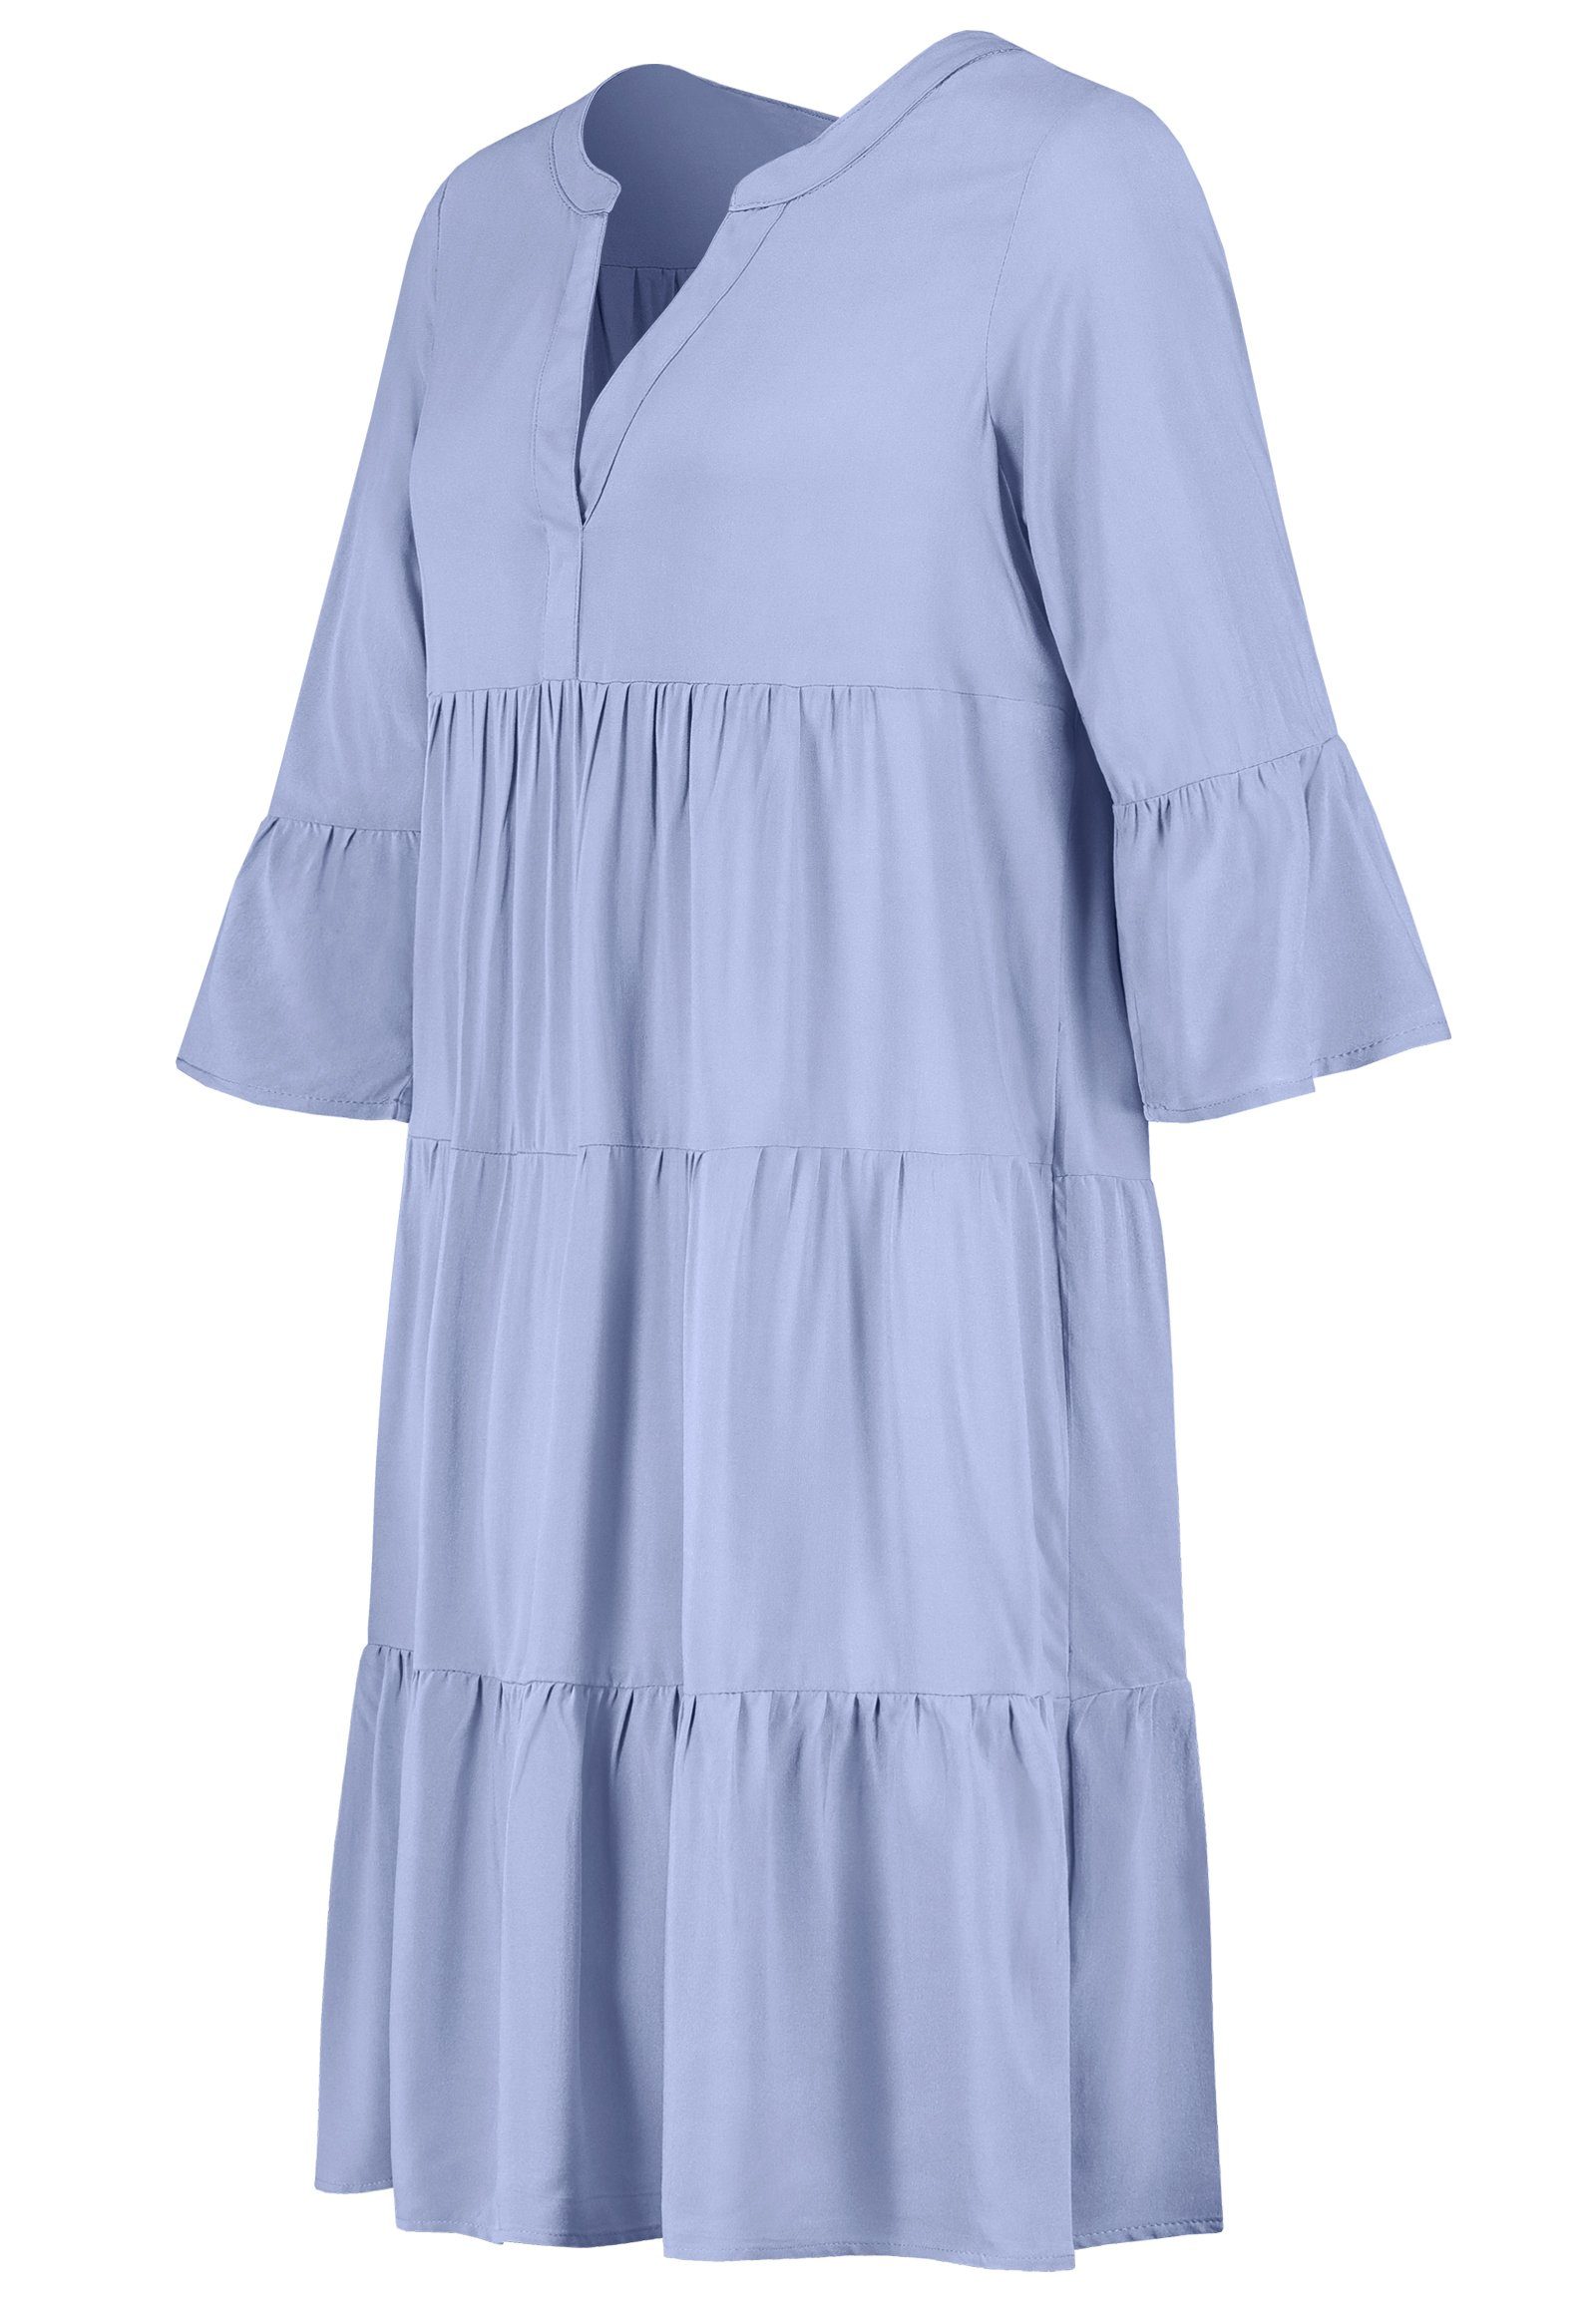 SUBLEVEL Strandkleid Kleid VOLANTS Damen Hell Strandkleid 100% Sublevel Sommerkleid MIT Viskose Blau